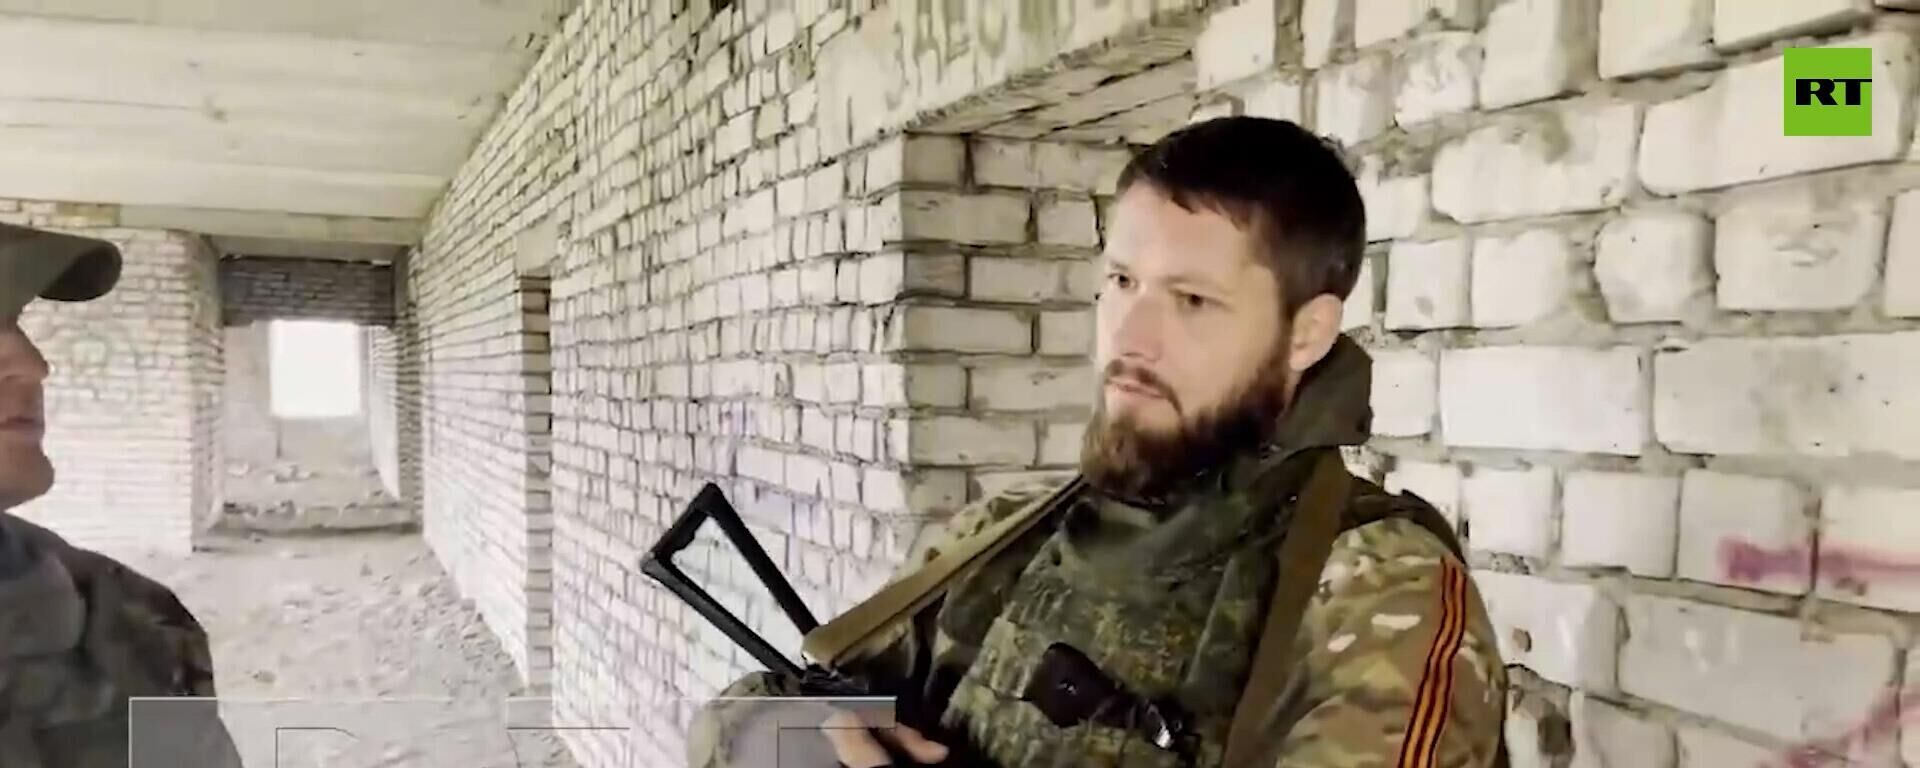 Một người lính tình nguyện sống ở Ukraina đến năm 2014 cho biết lý do tại sao anh ấy đi chiến đấu cho phía Nga. - Sputnik Việt Nam, 1920, 07.11.2022